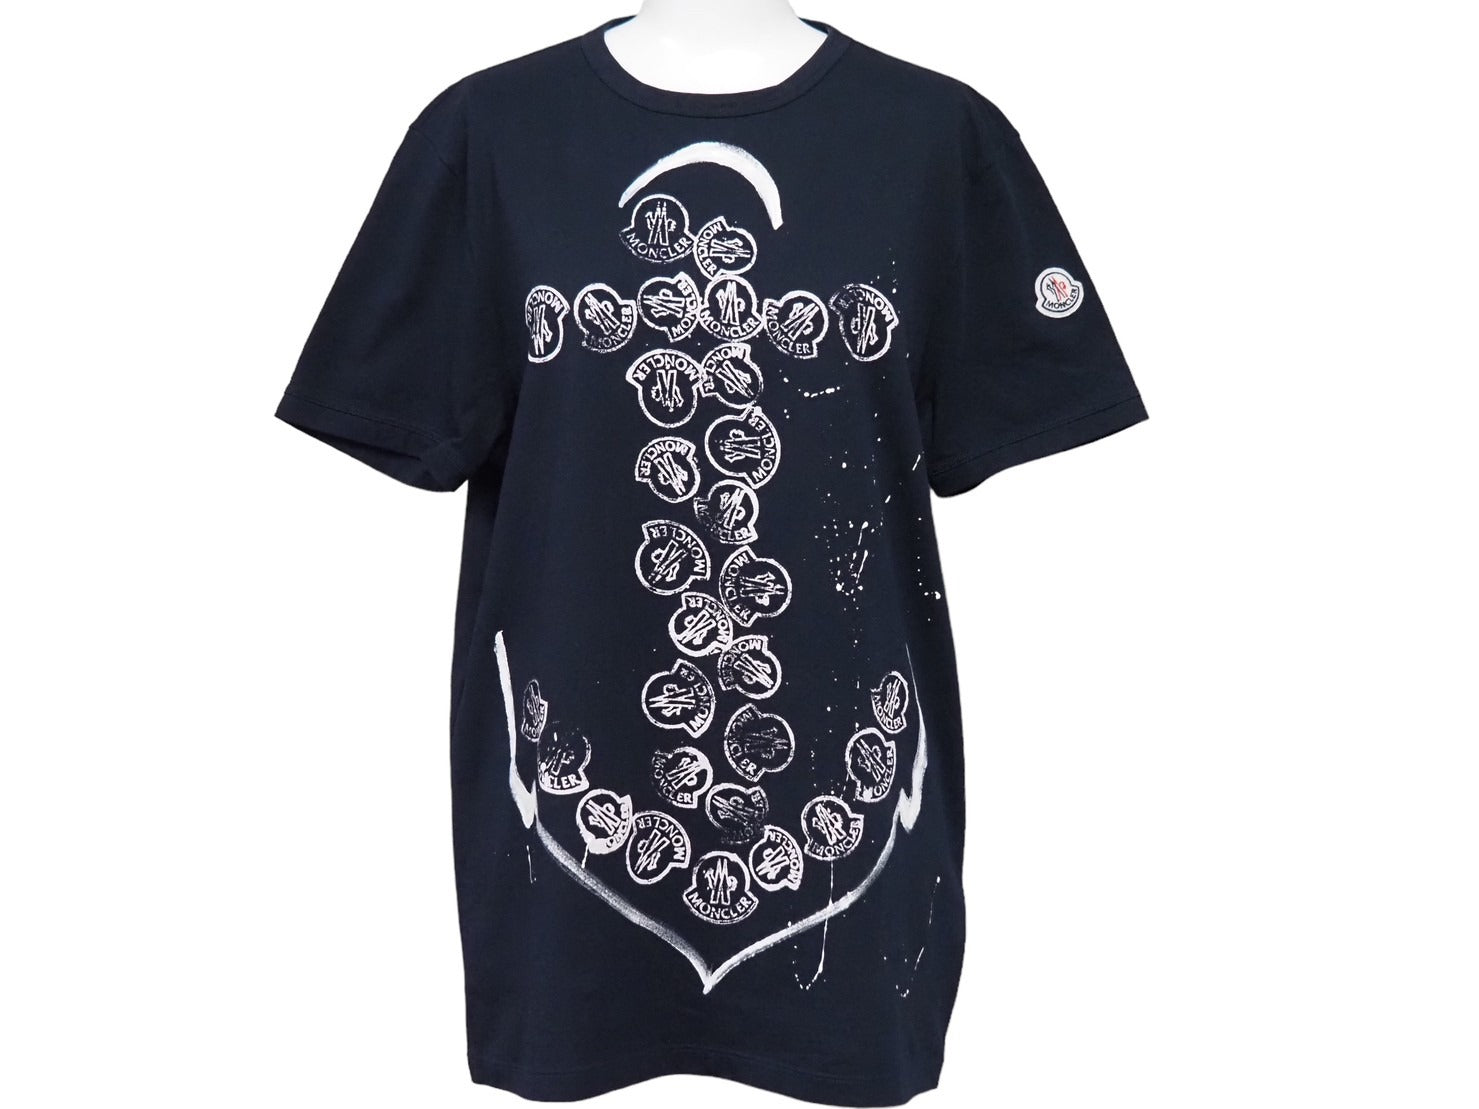 【新品送料込】MONCLER ロゴコットン Tシャツ Mサイズ